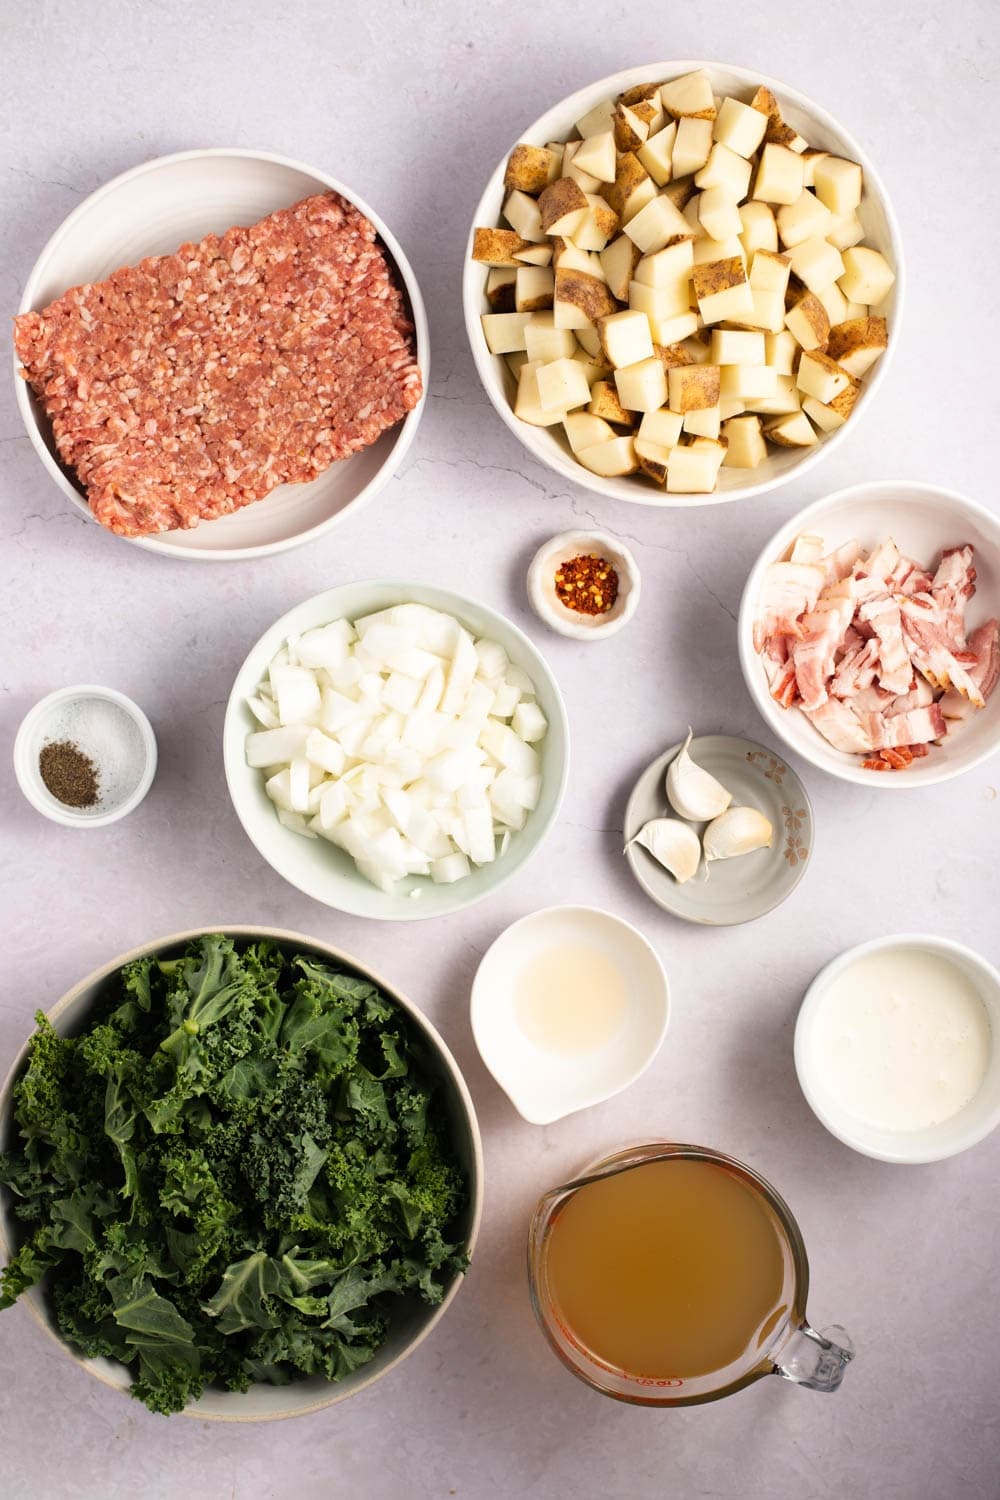 Ingredientes de la sopa Zuppa Toscana: salchicha italiana, tocino, papas, ajo, cebolla, caldo de pollo, col rizada y crema espesa